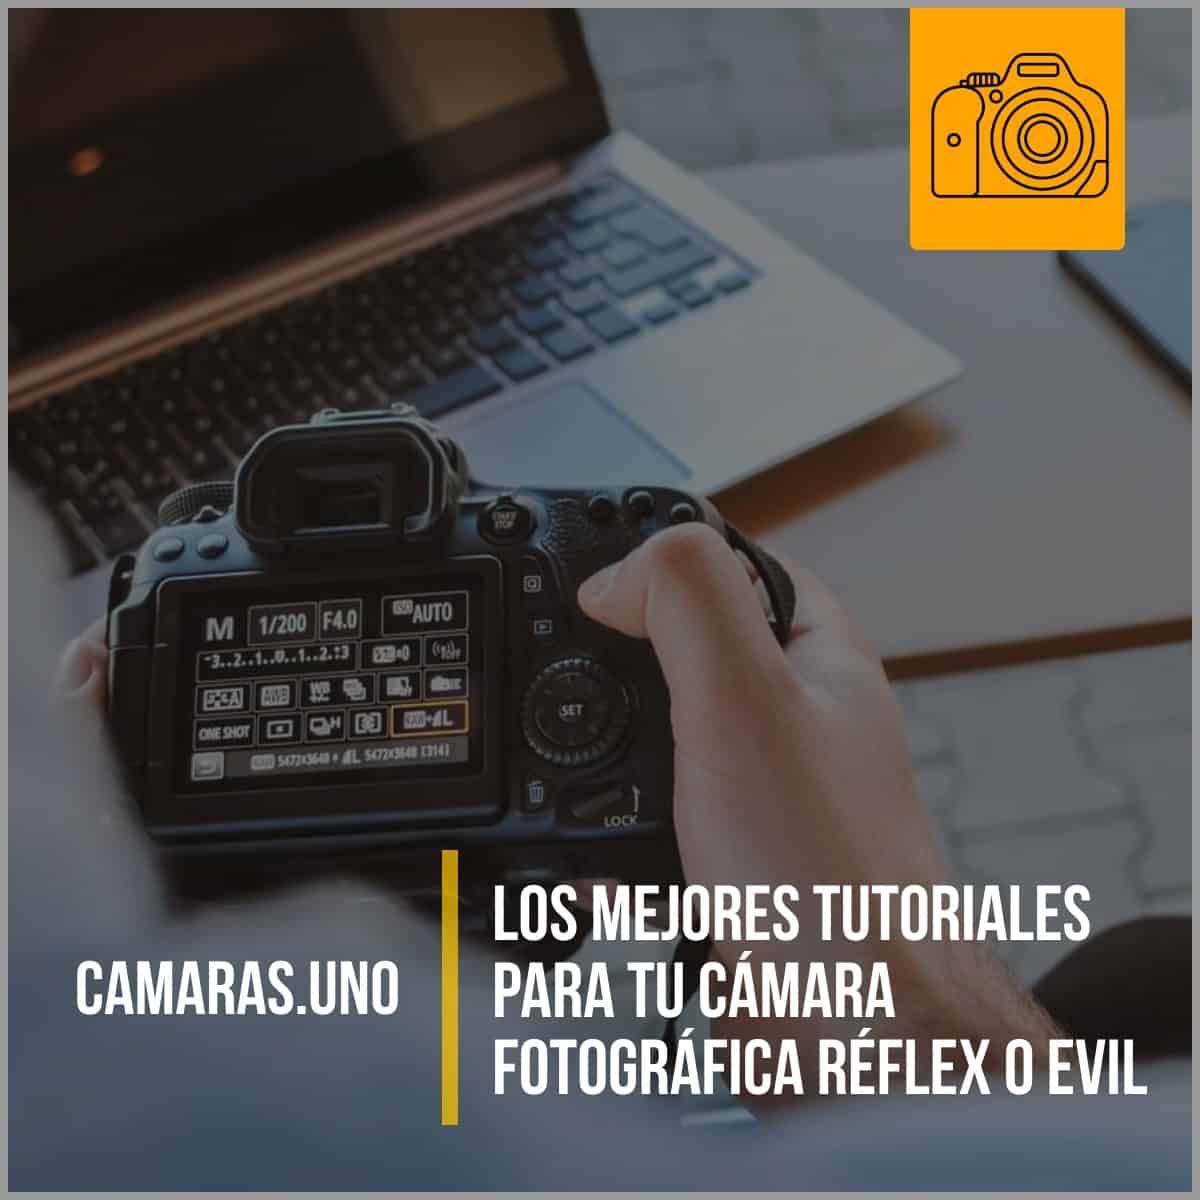 Los mejores tutoriales para tu cámara fotográfica réflex o EVIL